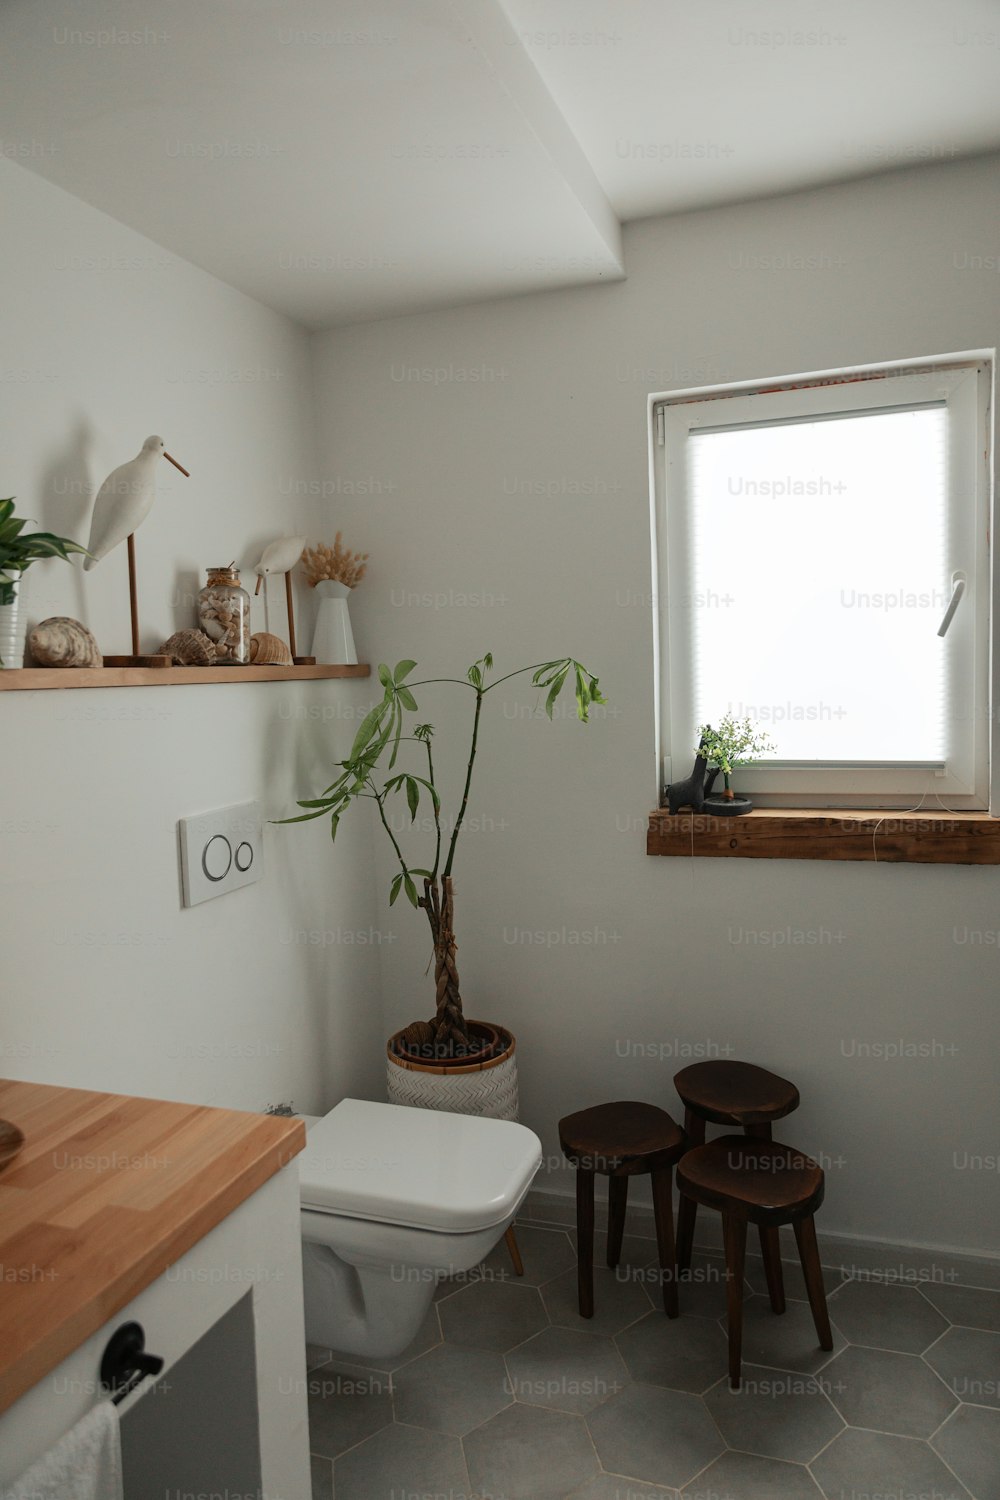 une toilette blanche assise à côté d’une fenêtre dans une salle de bain